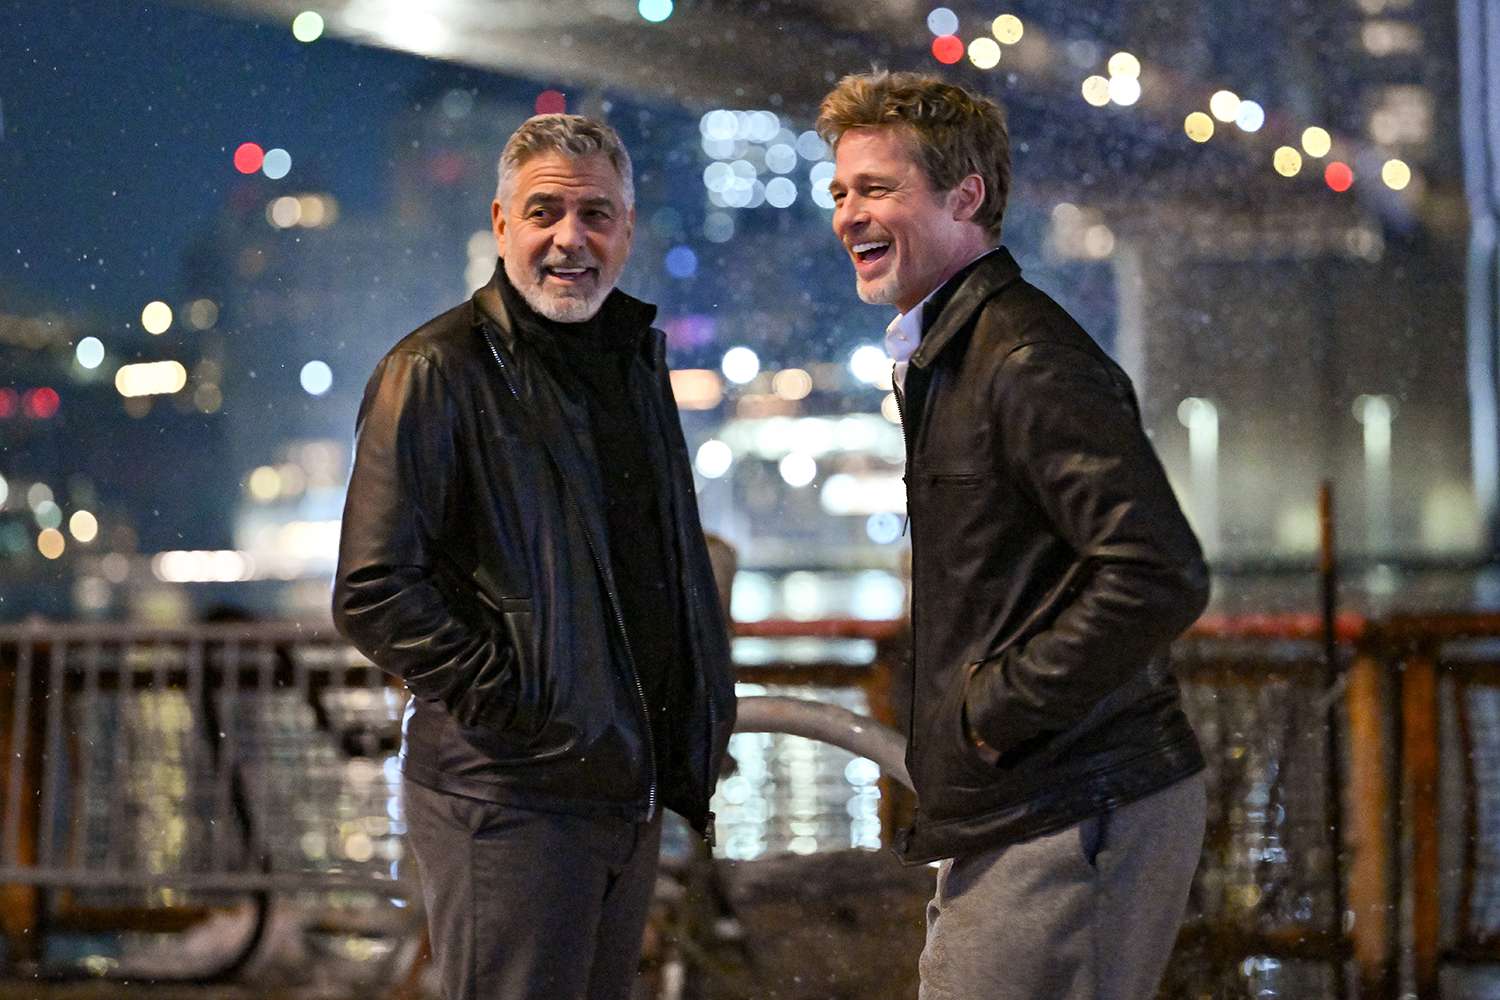 Brad Pitt y George Clooney se reencuentran en el nuevo tráiler de “Wolfs”